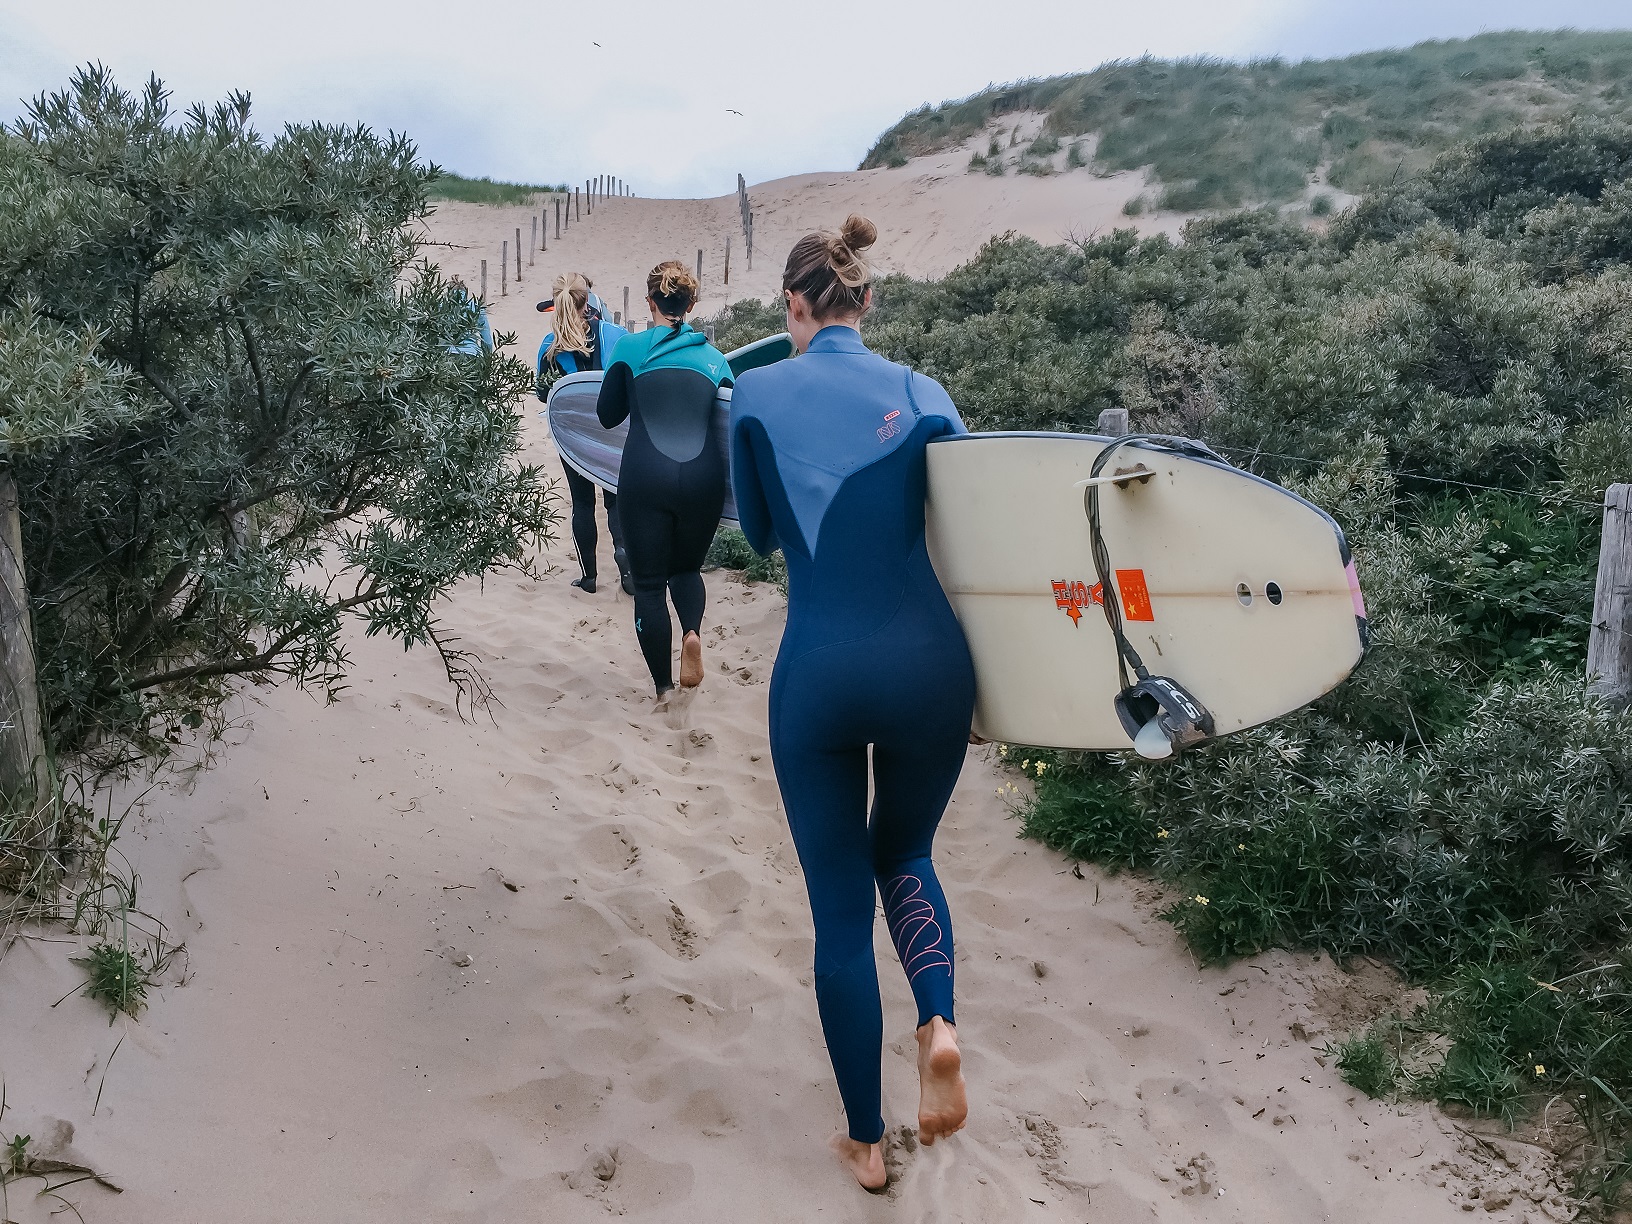 Frauen mit Surfbrettern am surfspots holland Scheveningen